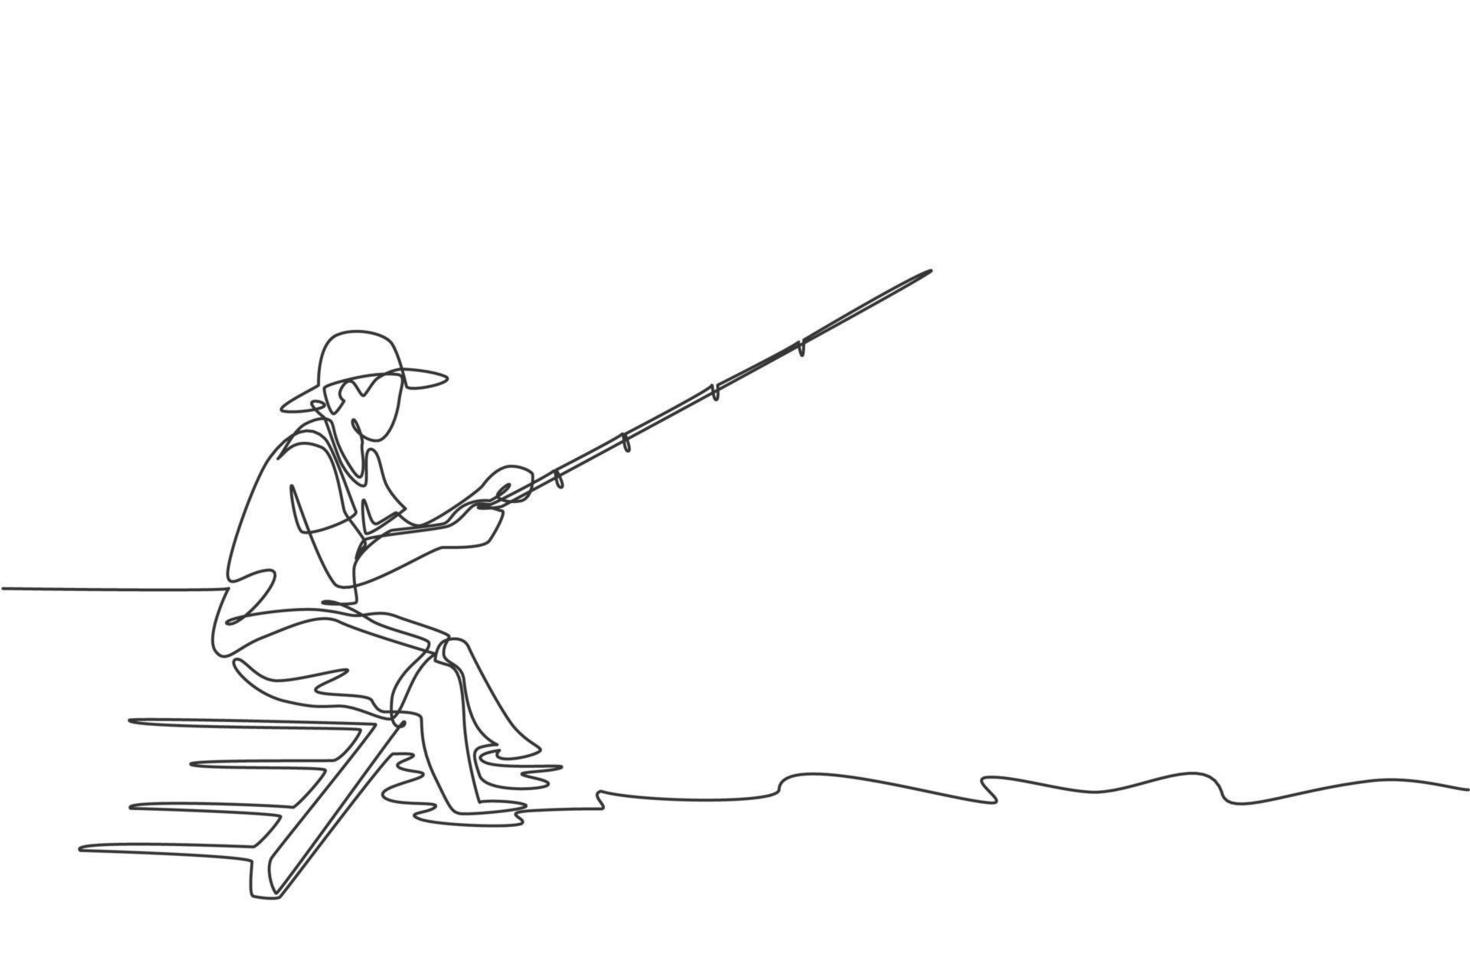 una sola línea de dibujo joven pescador feliz sentado en un muelle de madera y pescando pacíficamente ilustración gráfica vectorial. viajes de vacaciones por concepto de afición a la pesca. diseño moderno de dibujo de línea continua vector